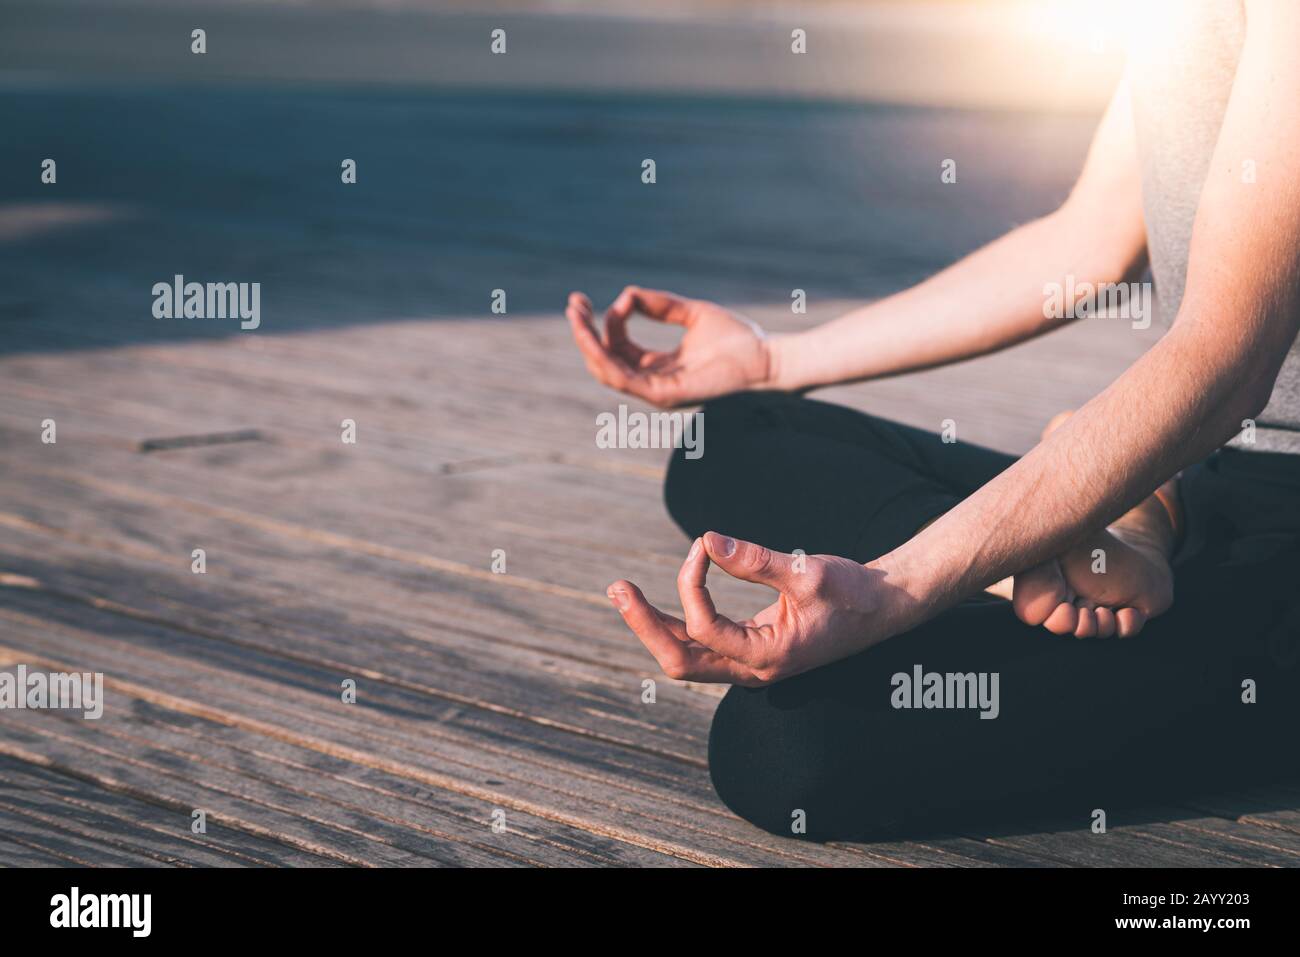 Dettaglio delle mani di un giovane che medita lo yoga praticando su alcune tavole di legno in posizione lotus. Foto Stock